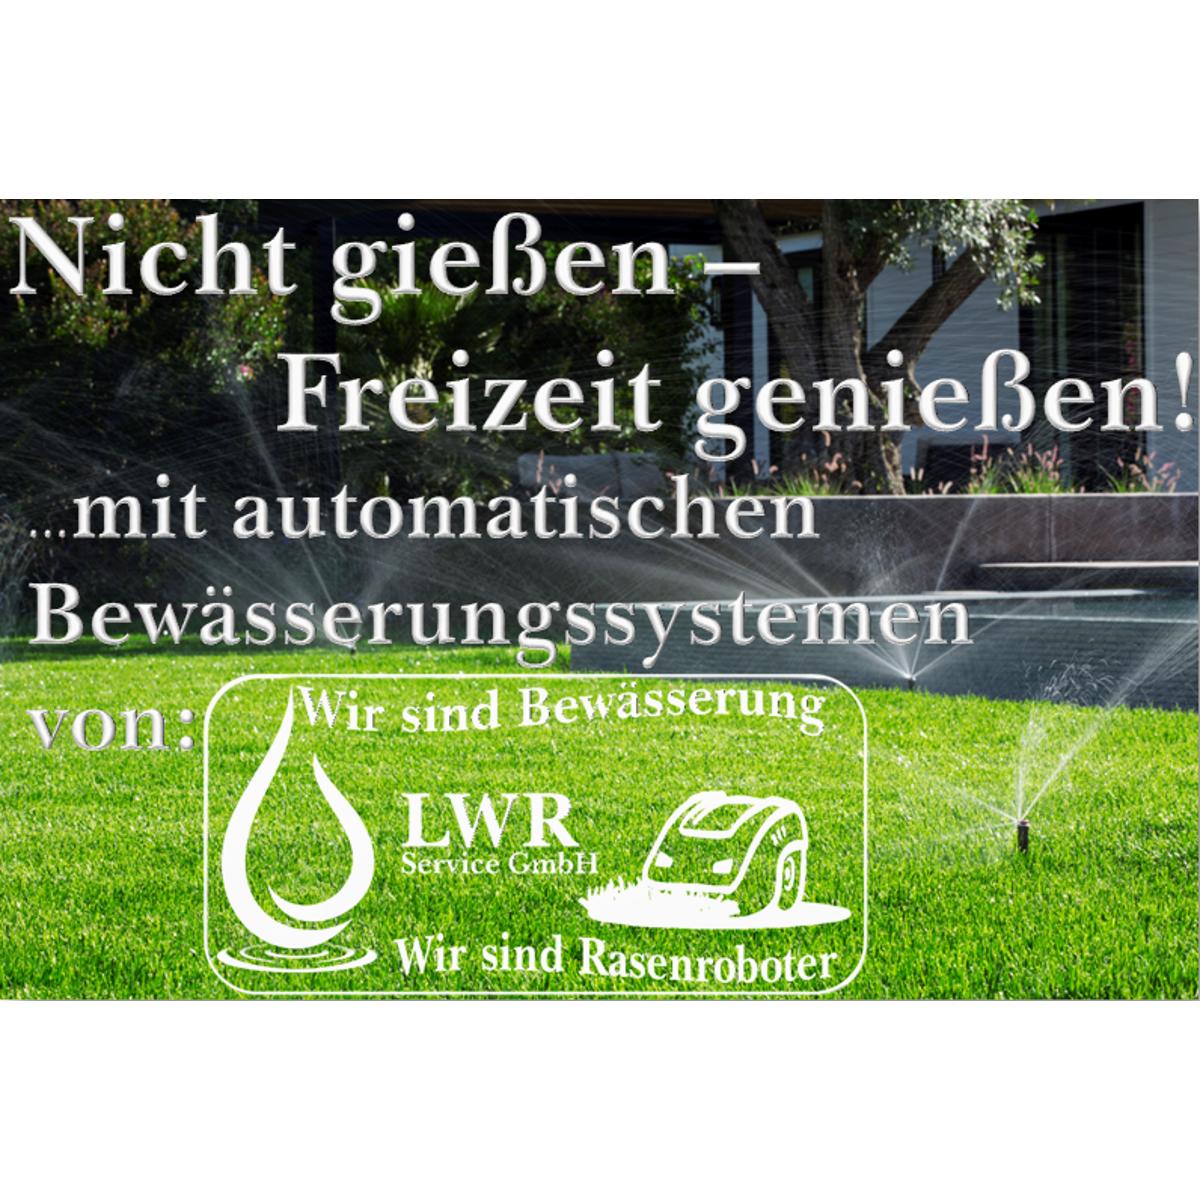 Bild 15 LWR Service GmbH in Neuss